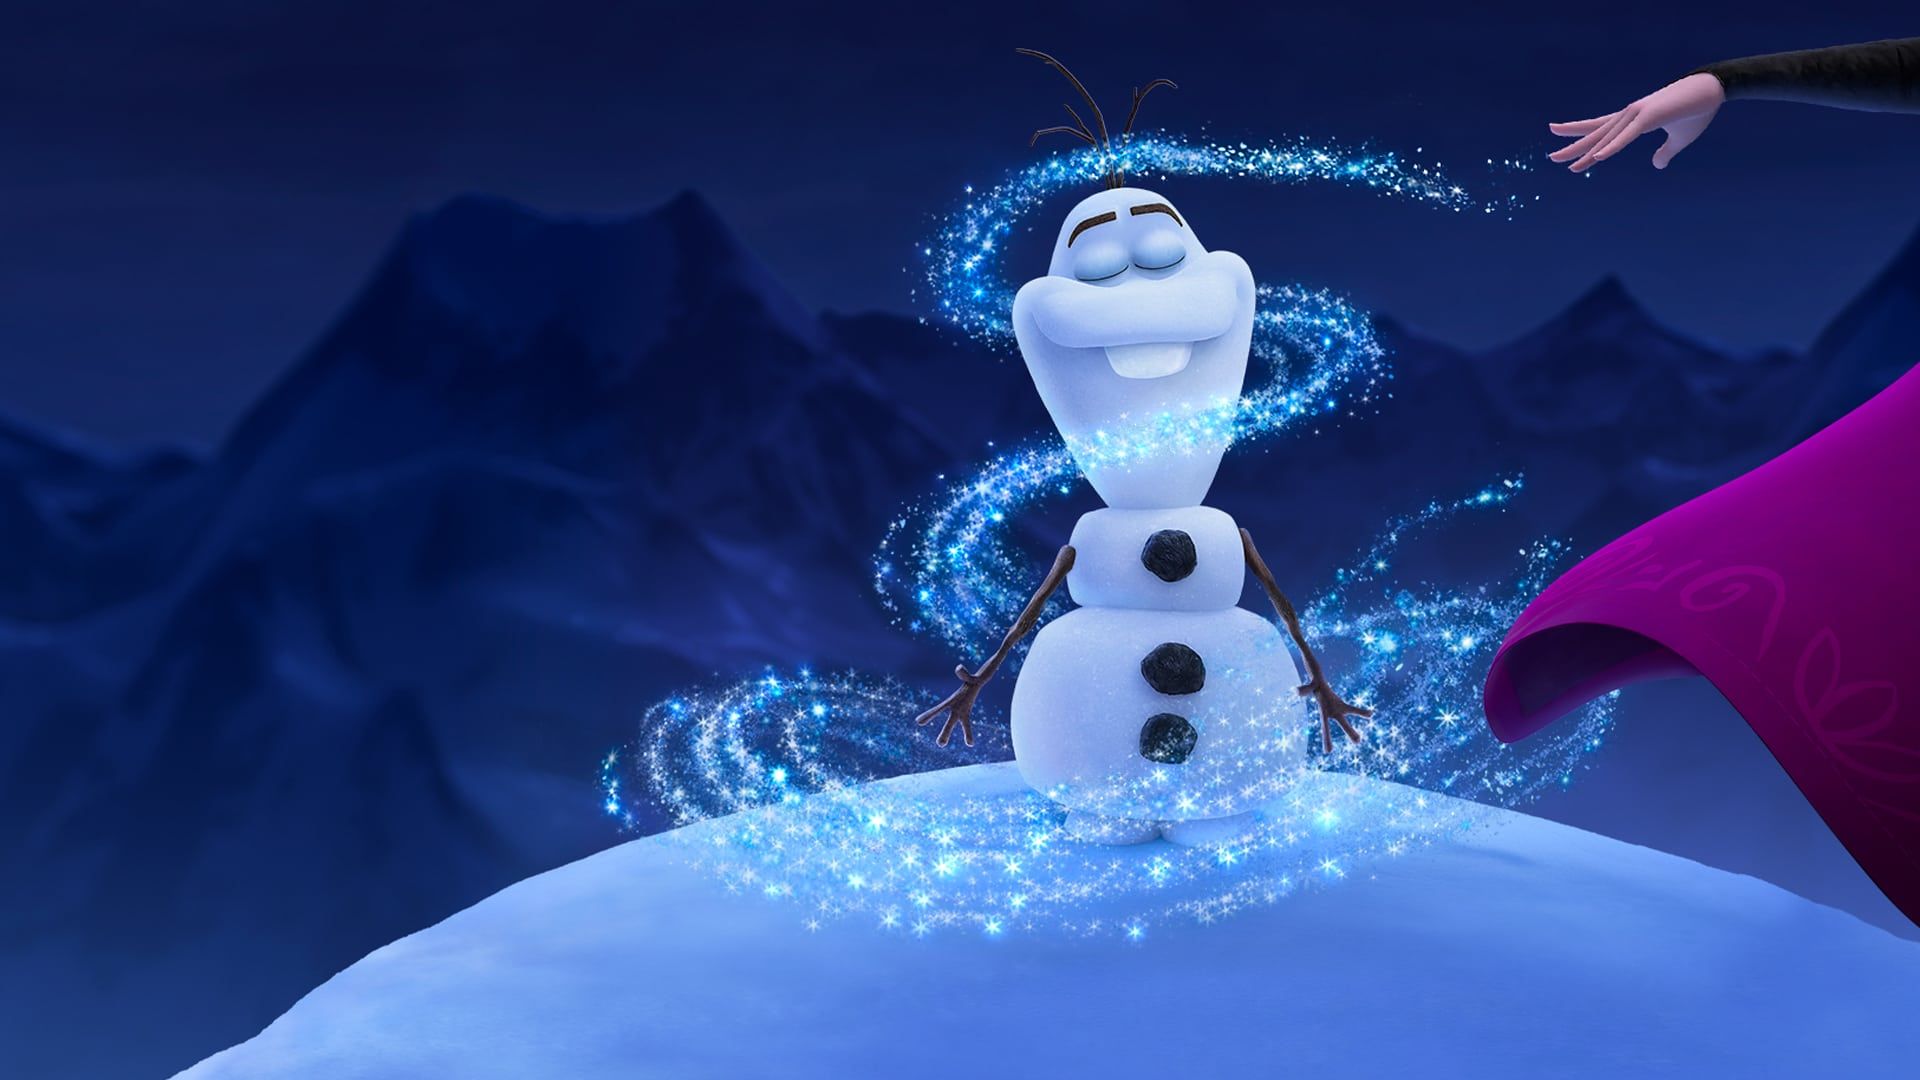 Disney+ : Les Aventure d'Olaf dévoile un nouveau trailer